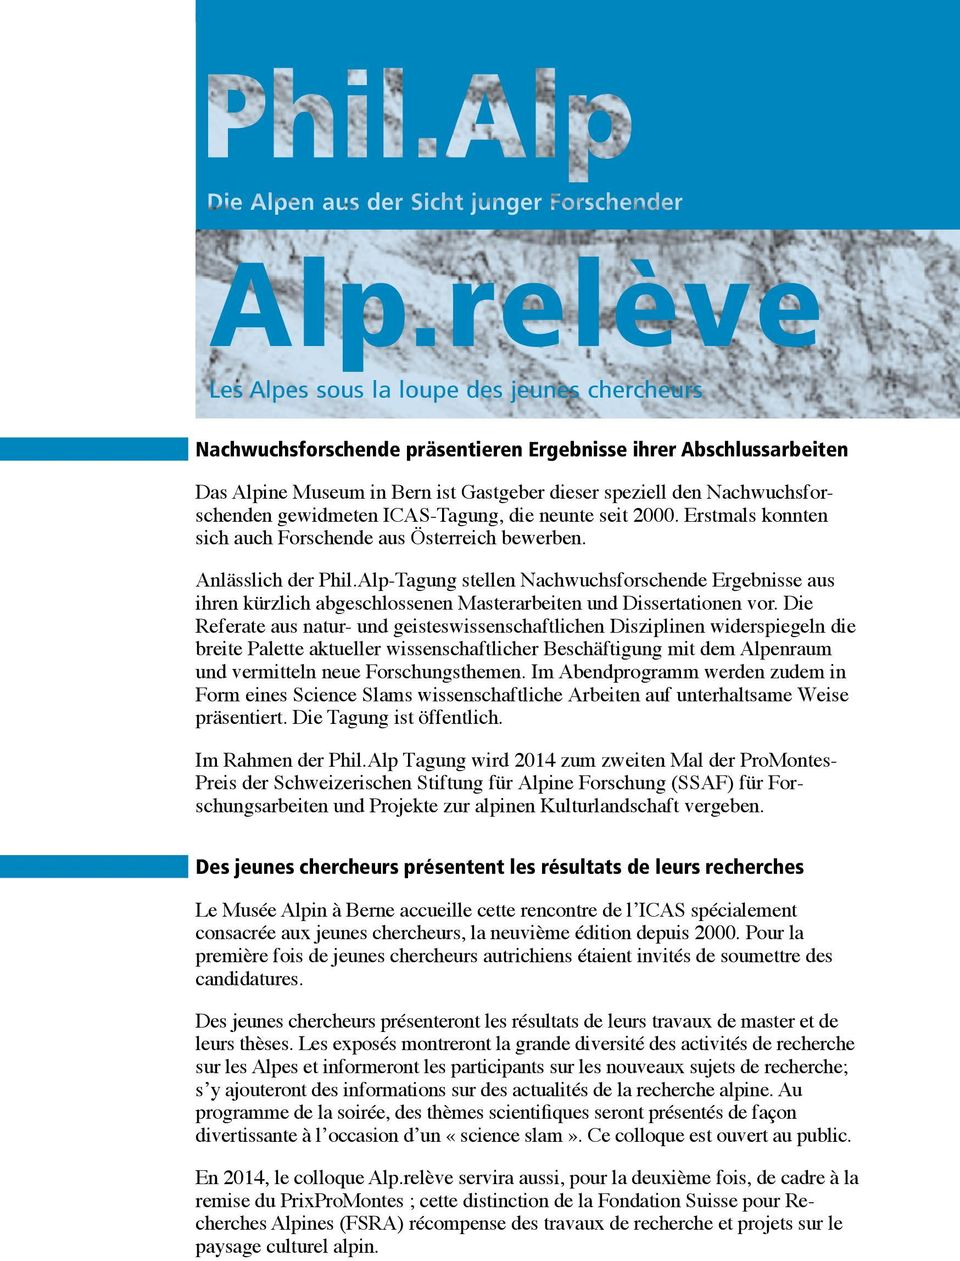 Alp-Tagung stellen Nachwuchsforschende Ergebnisse aus ihren kürzlich abgeschlossenen Masterarbeiten und Dissertationen vor.